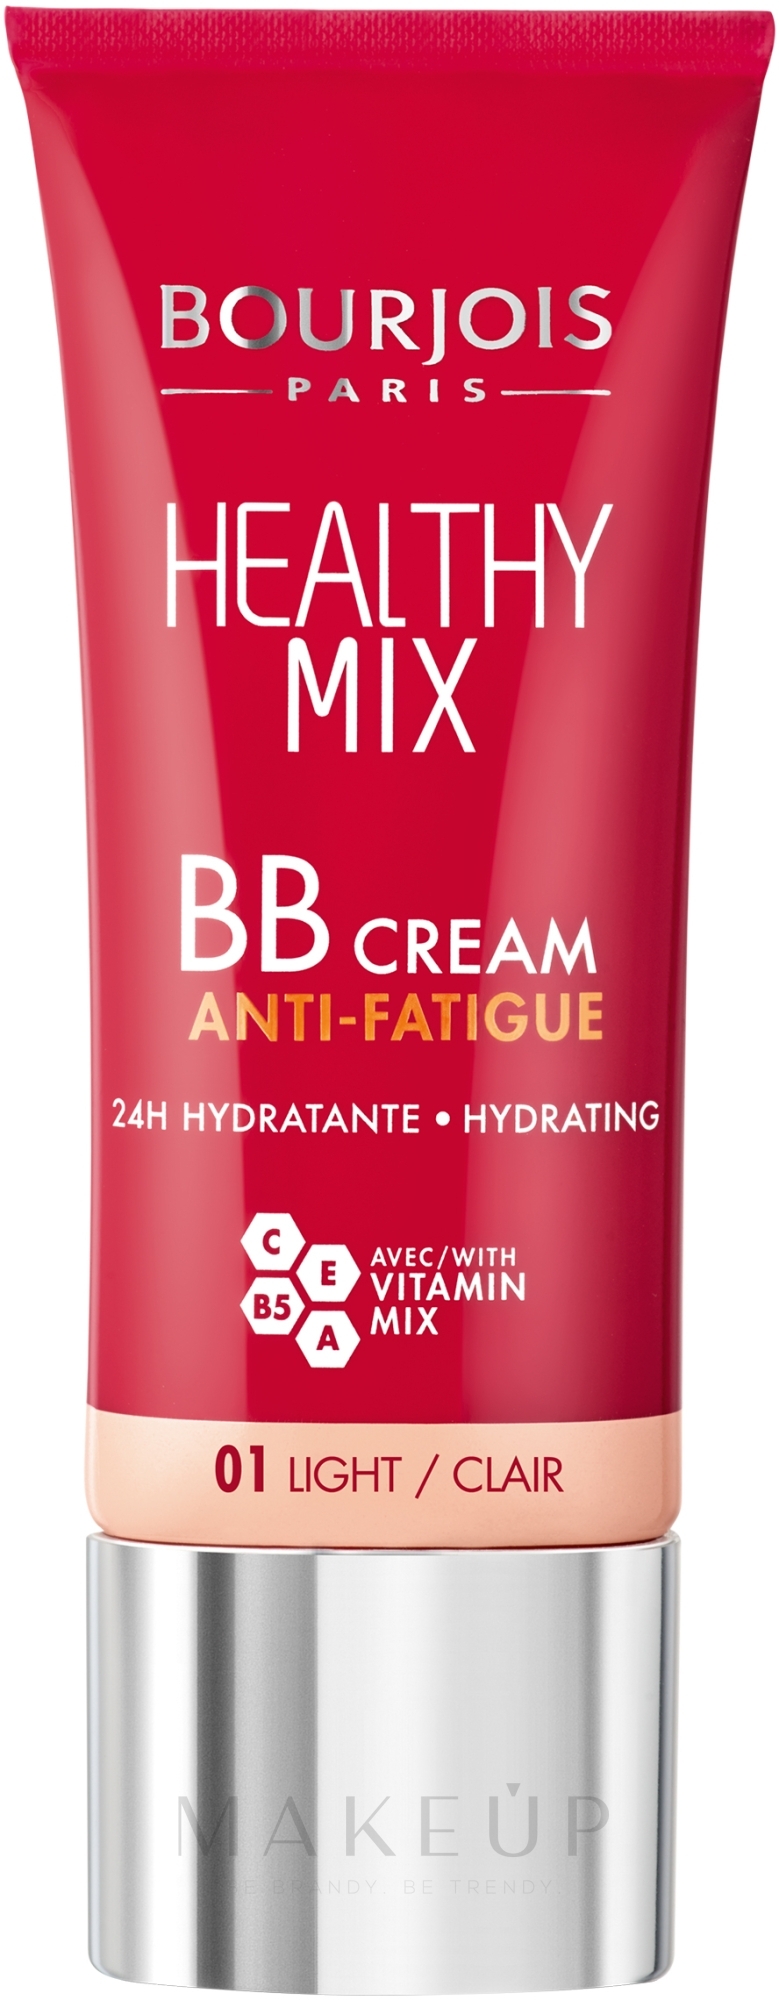 Feuchtigkeitsspendende BB Creme gegen müde Haut mit Vitaminkomplex - Bourjois Healthy Mix BB Cream Anti-Fatigue — Bild 01 - Light/Clair